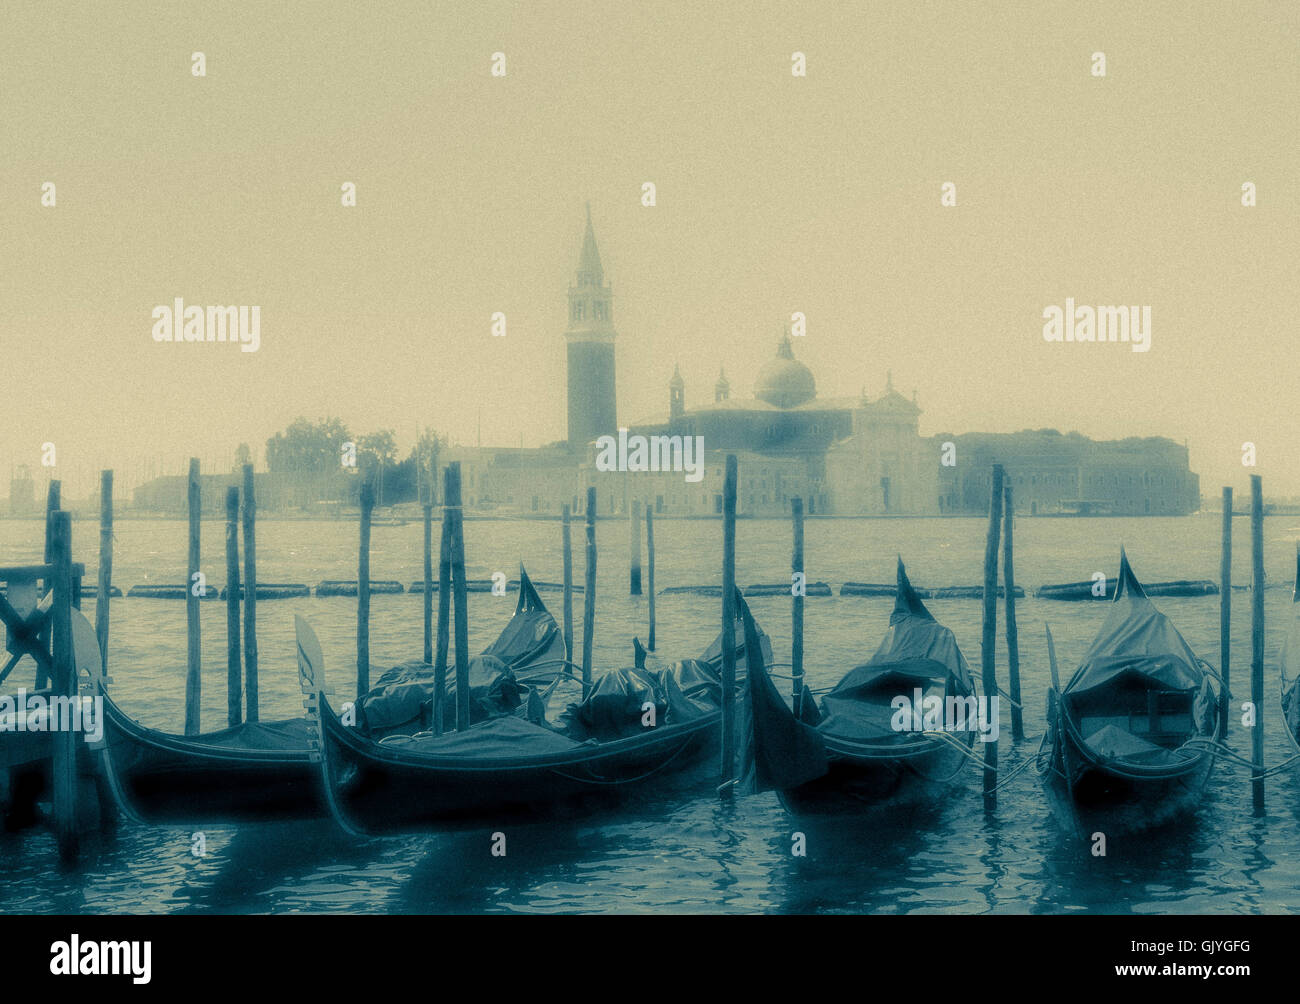 Las góndolas amarradas en la cuenca de San Marcos con San Giorgio Maggiore en el fondo. Venecia, Italia. Foto de stock